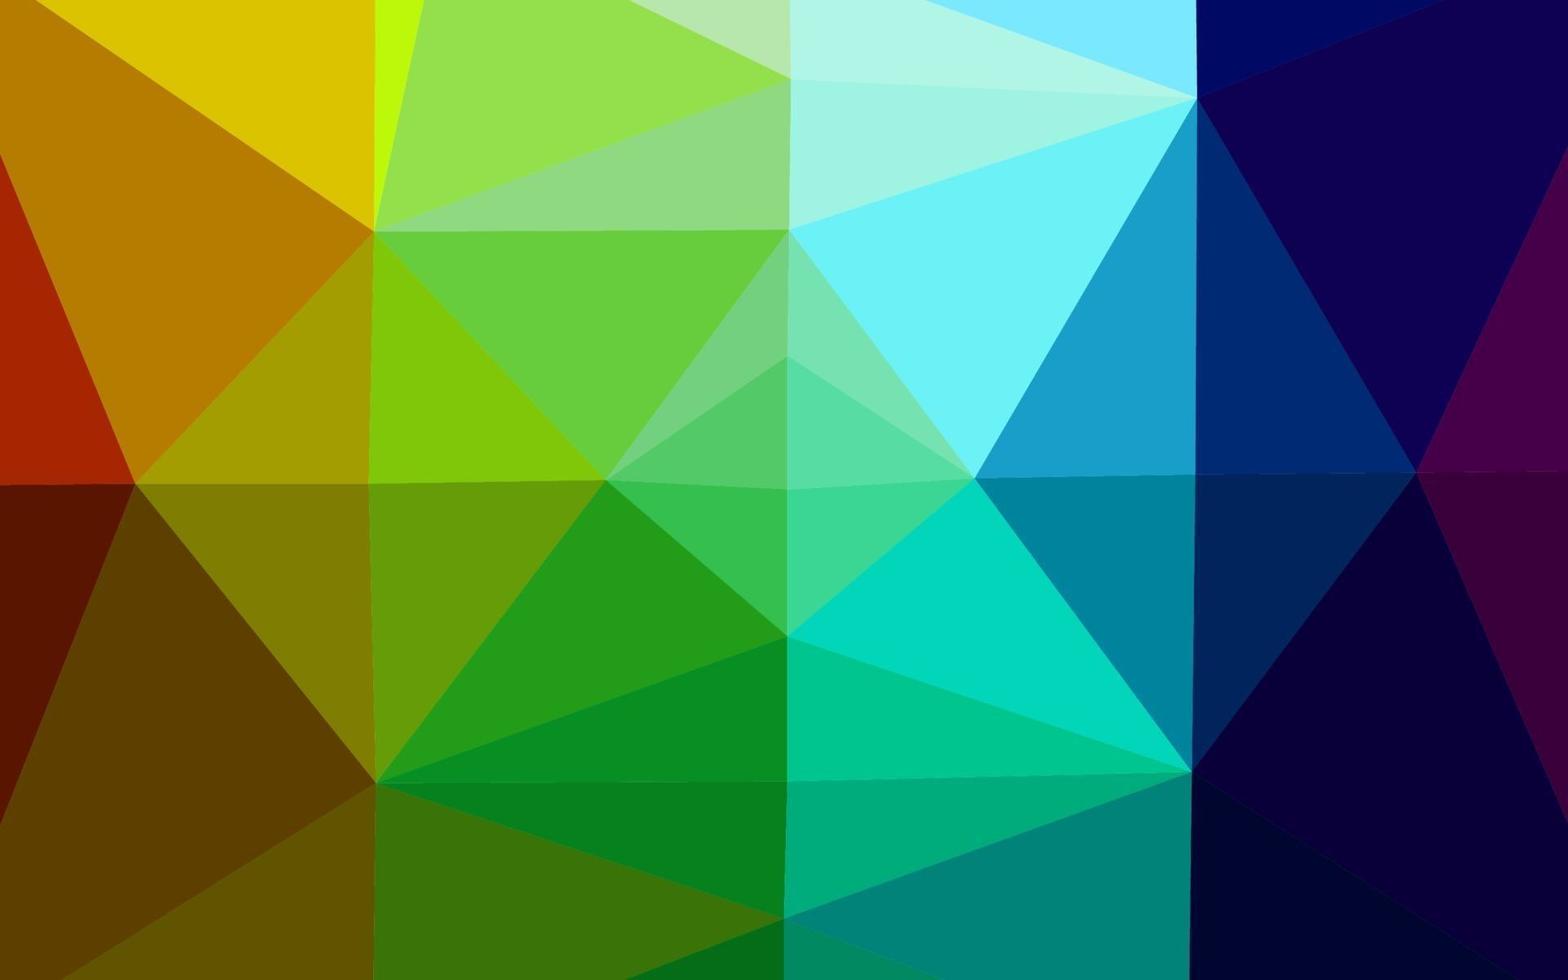 couverture polygonale abstraite multicolore sombre, vecteur arc-en-ciel.